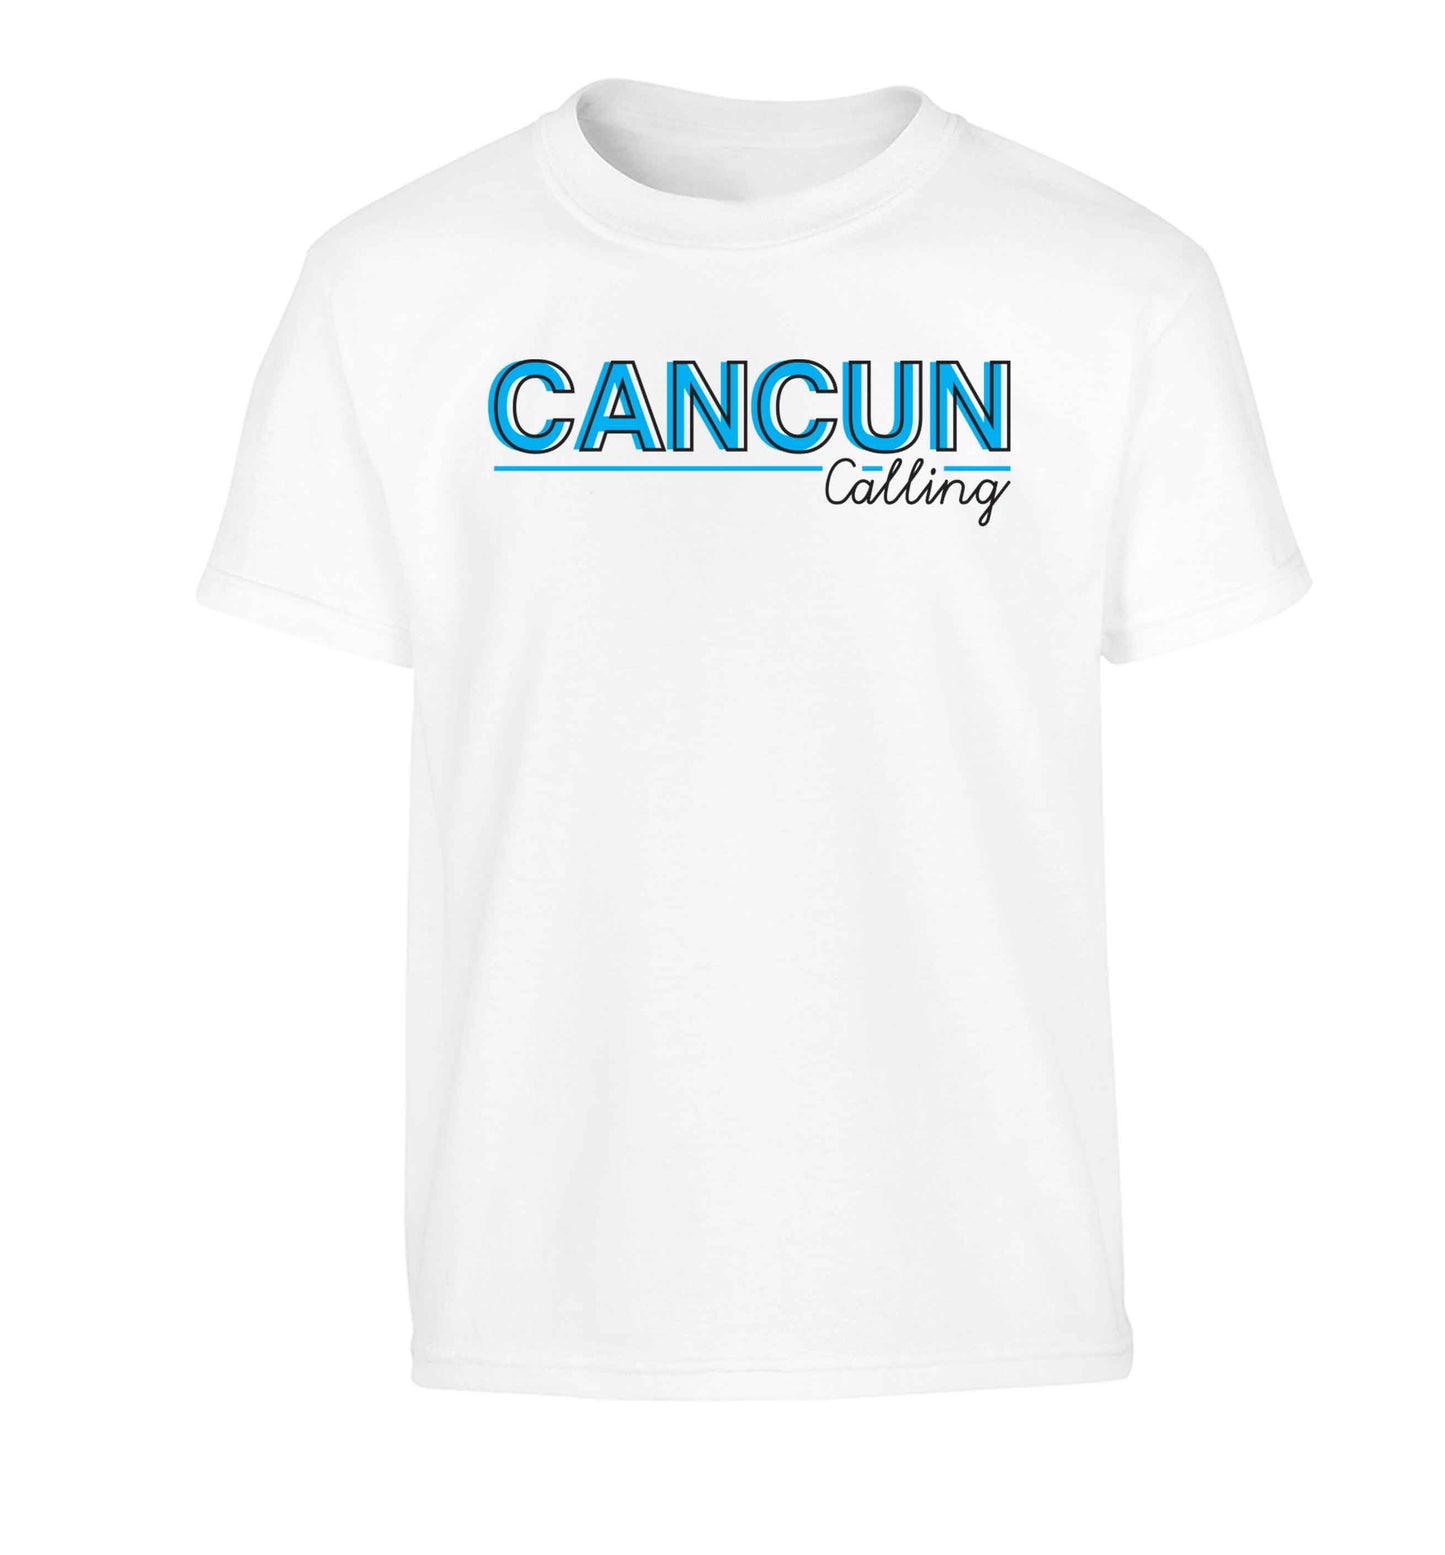 Cancun calling Children's white Tshirt 12-13 Years